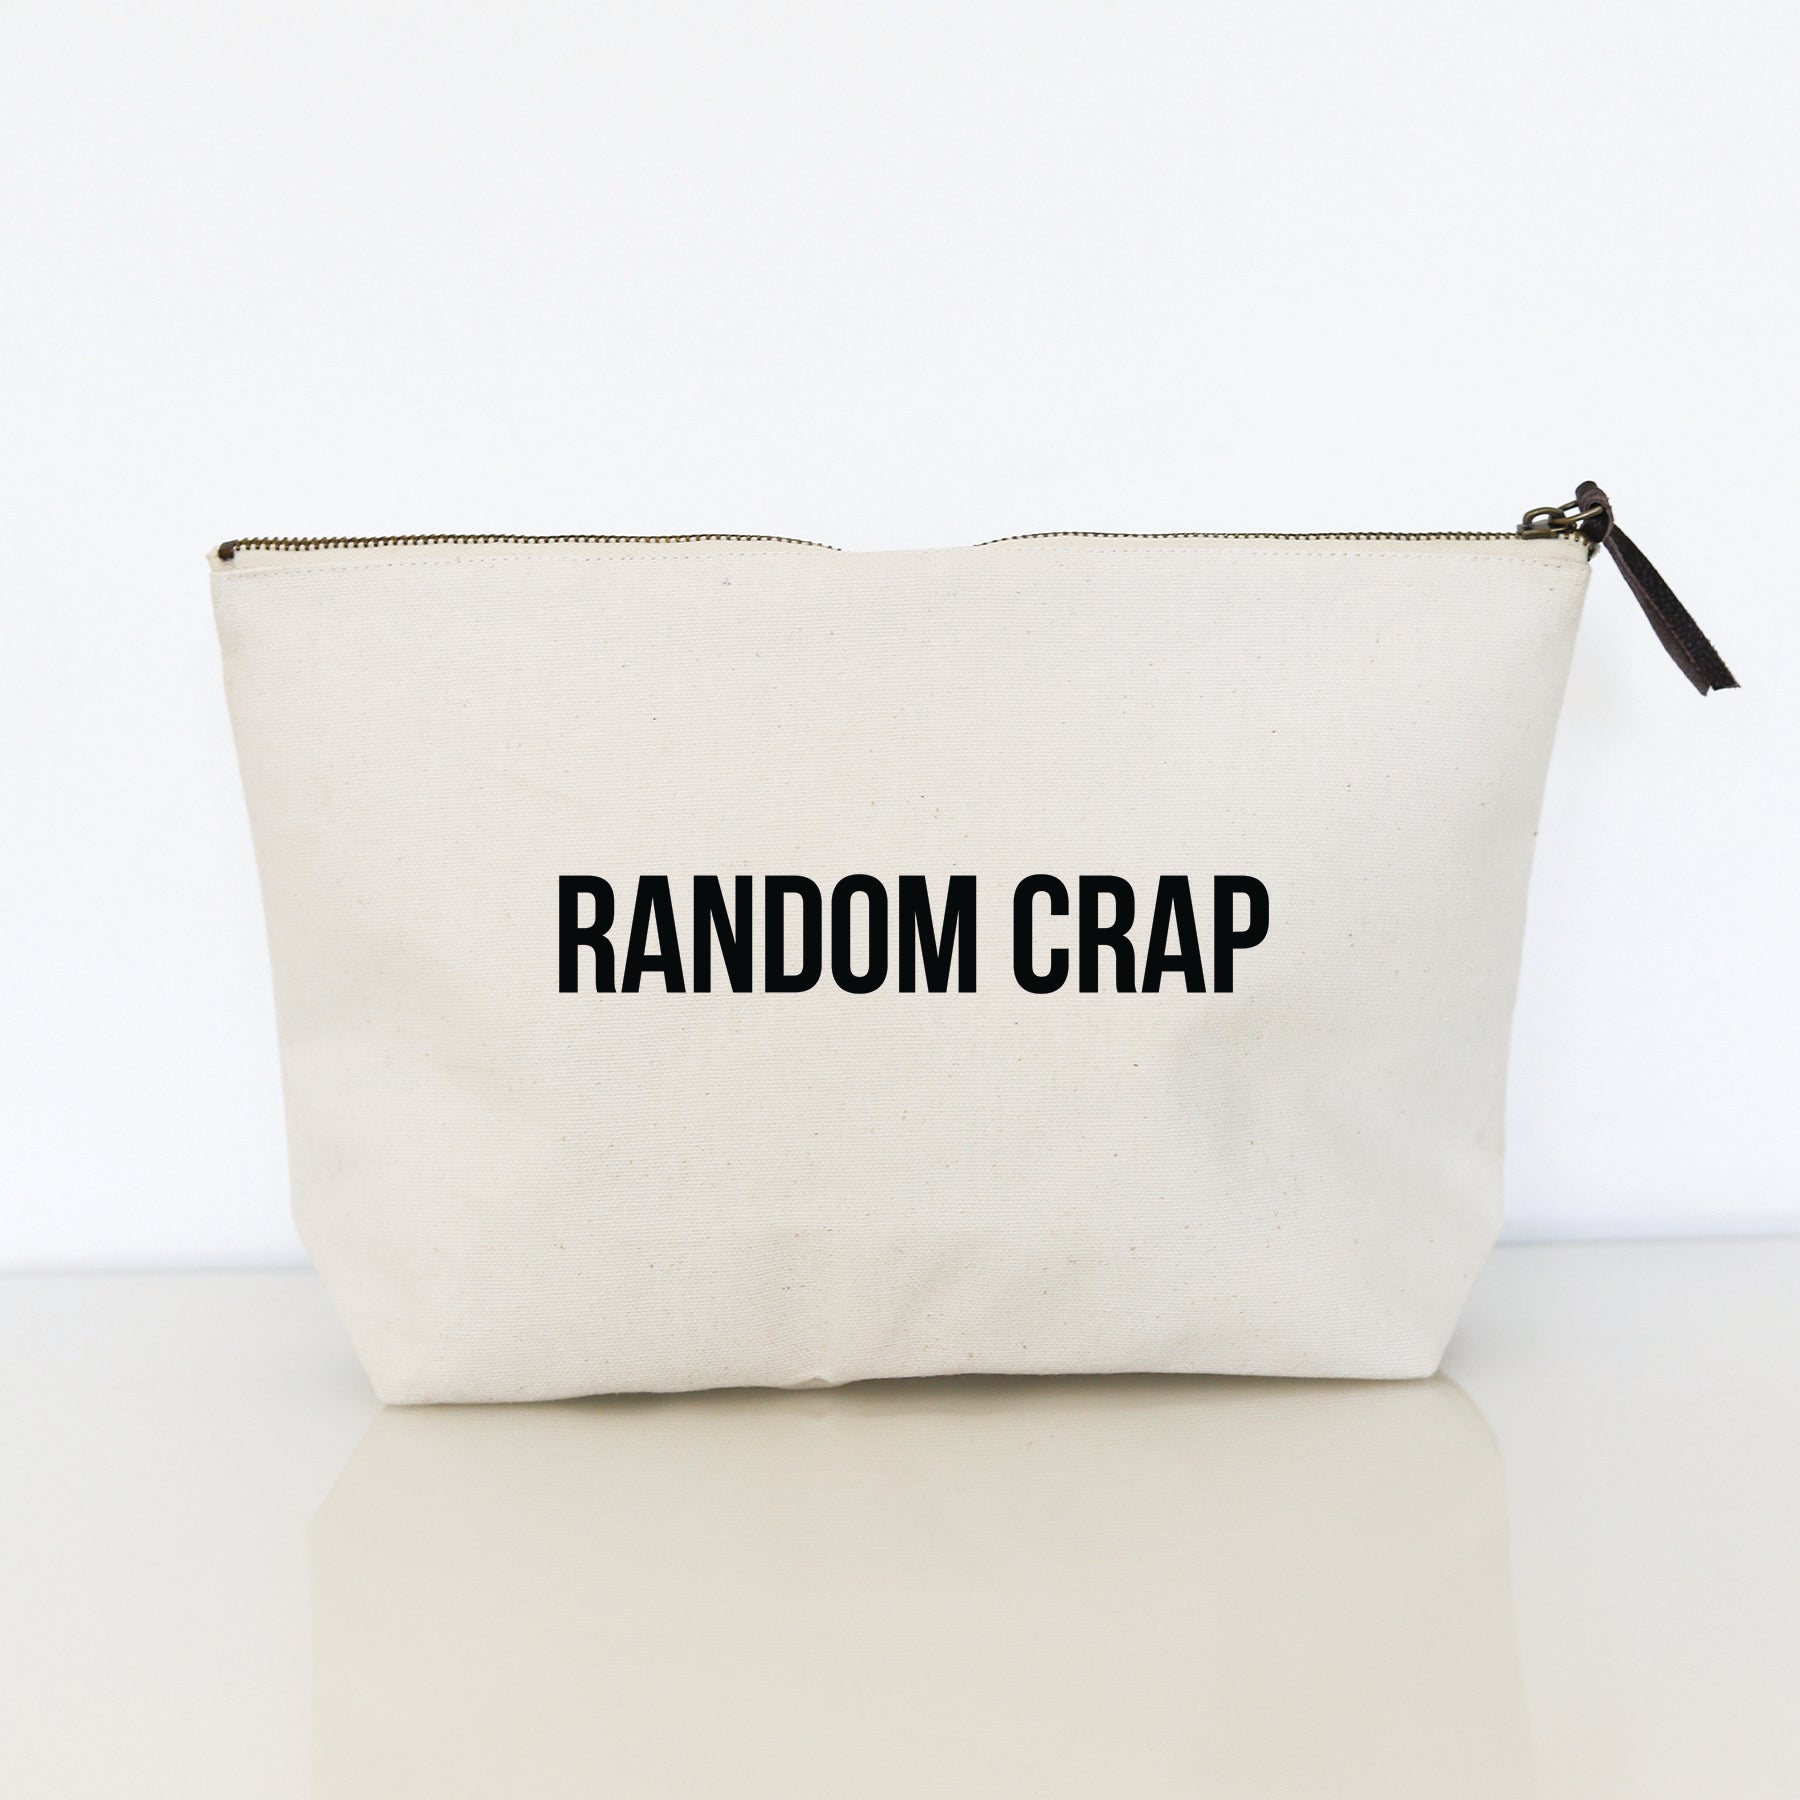 THIS BAG CONTAINS MY FACE ZIPPER BAG – Wildwood Landing LLC